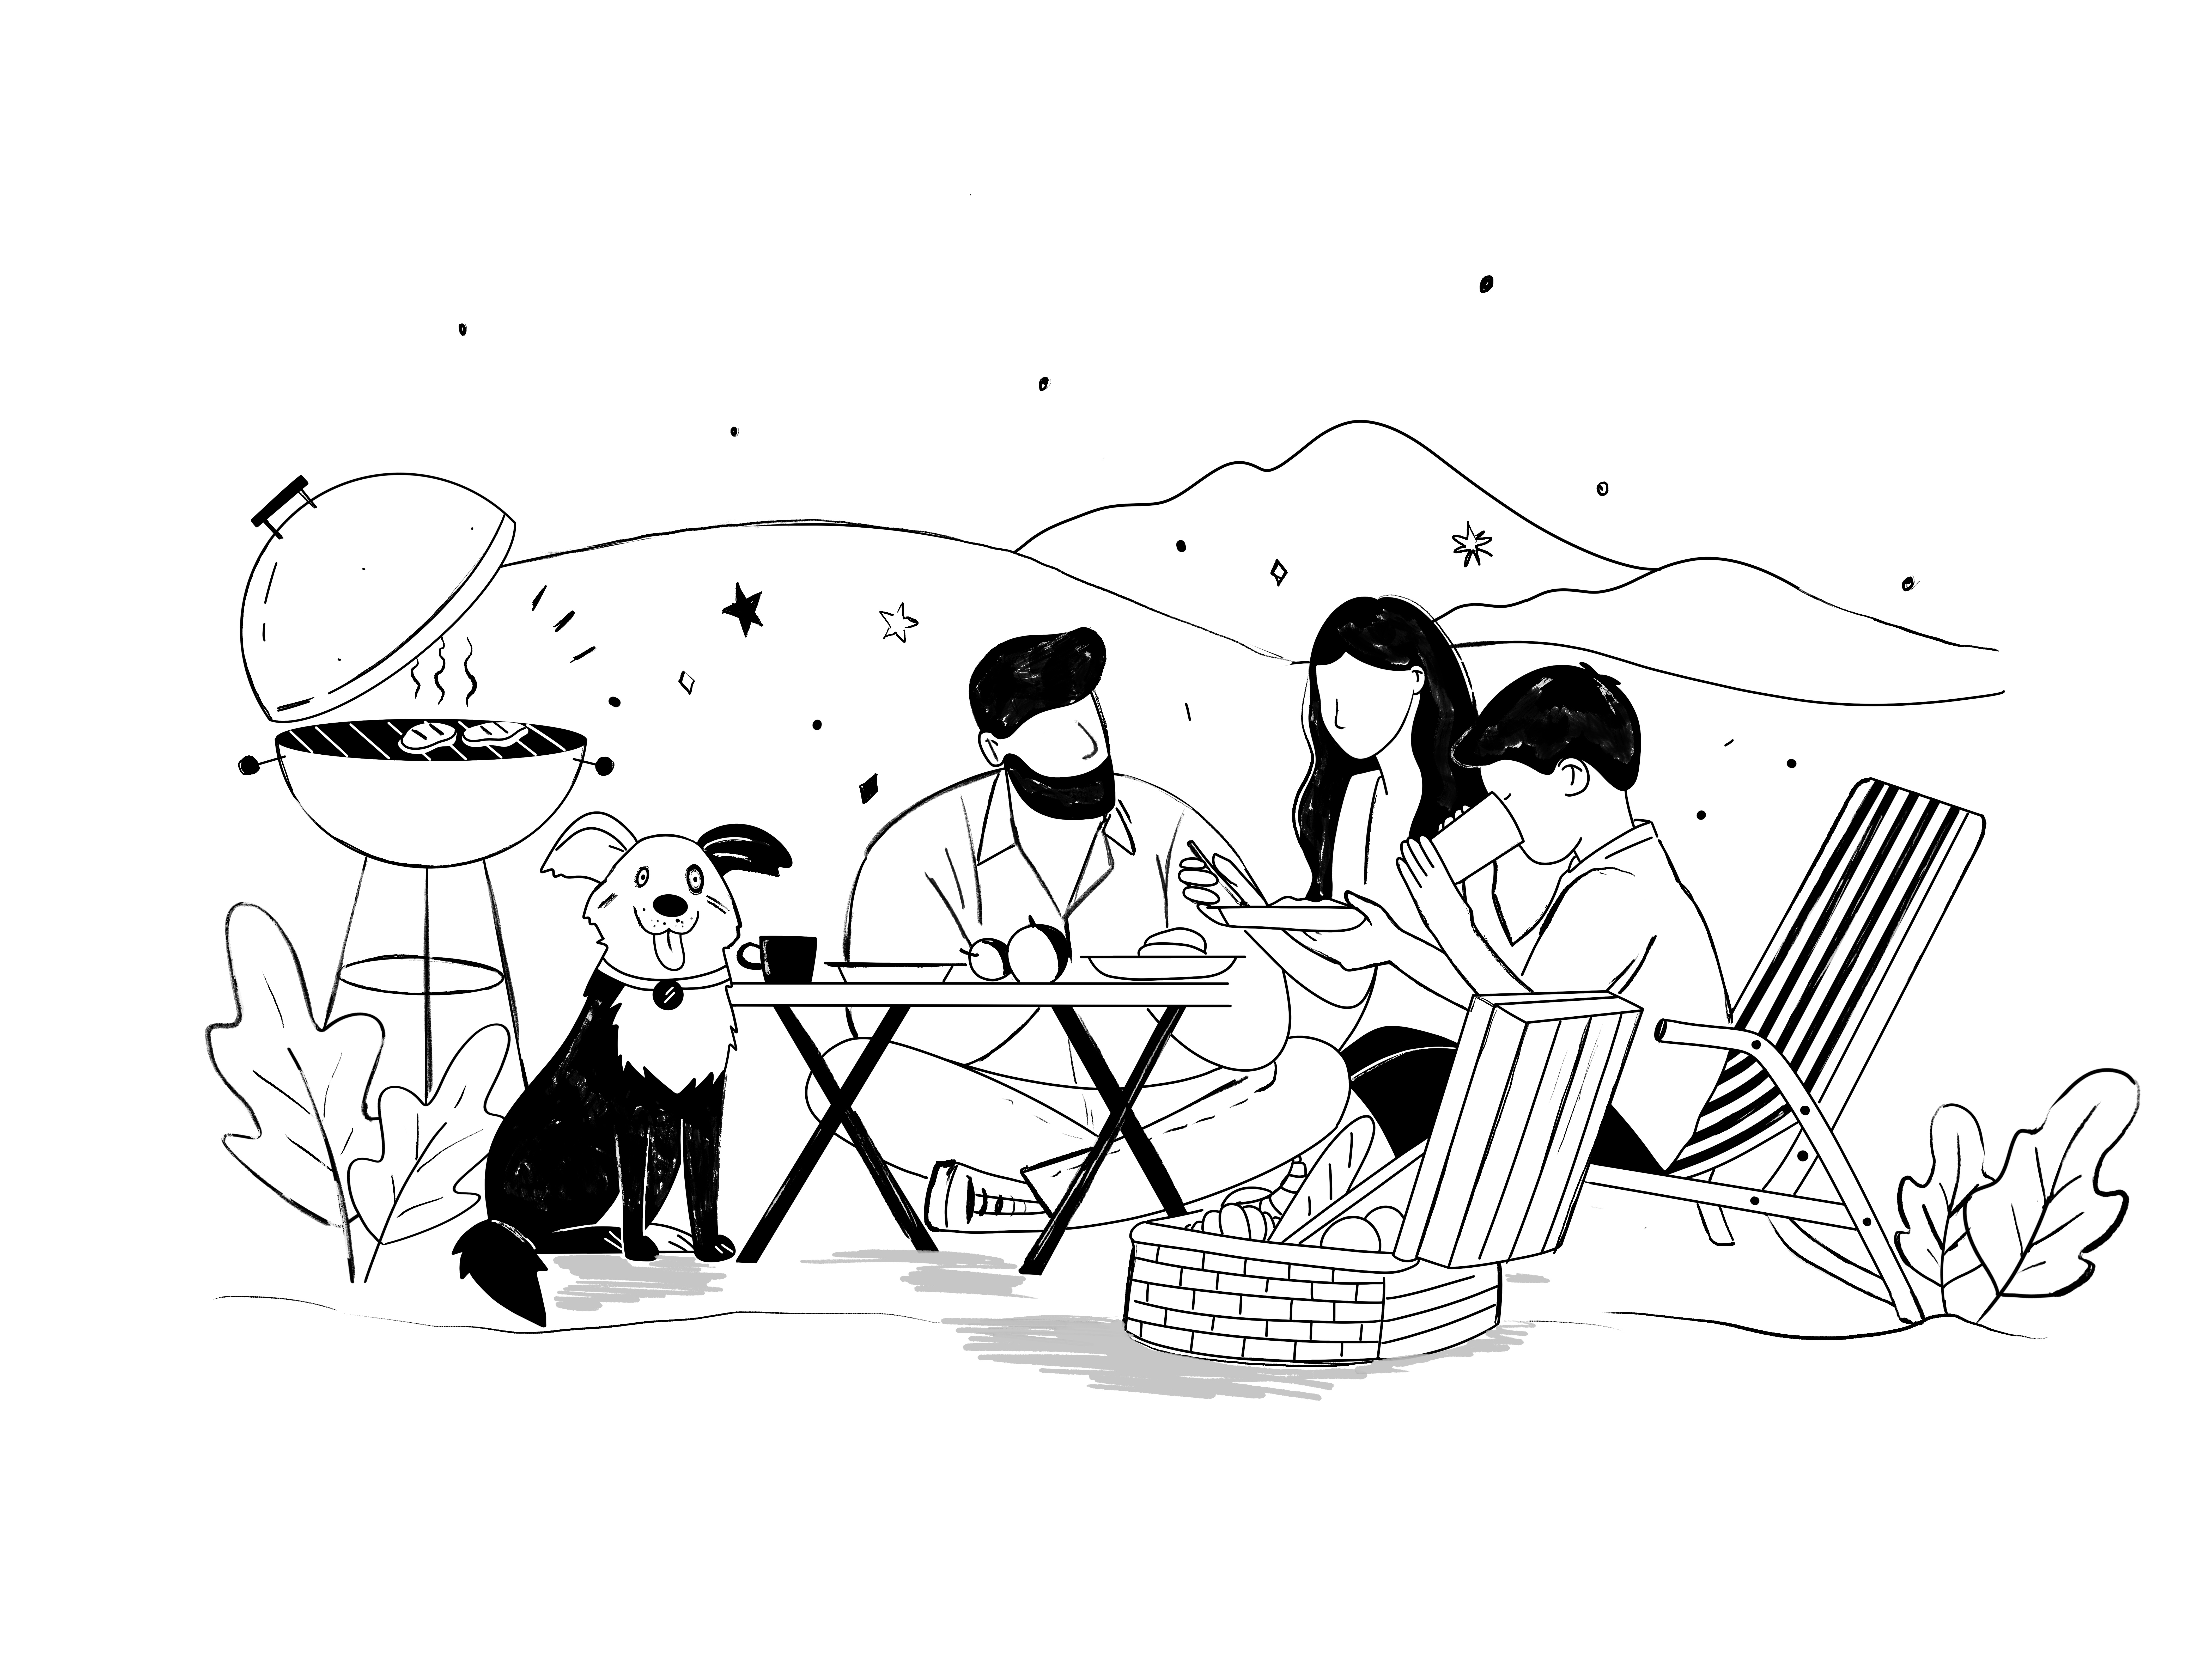 Summer Fun Family Picnic Retro Style Sketch ❤ Cartoon « Cartoon A Day